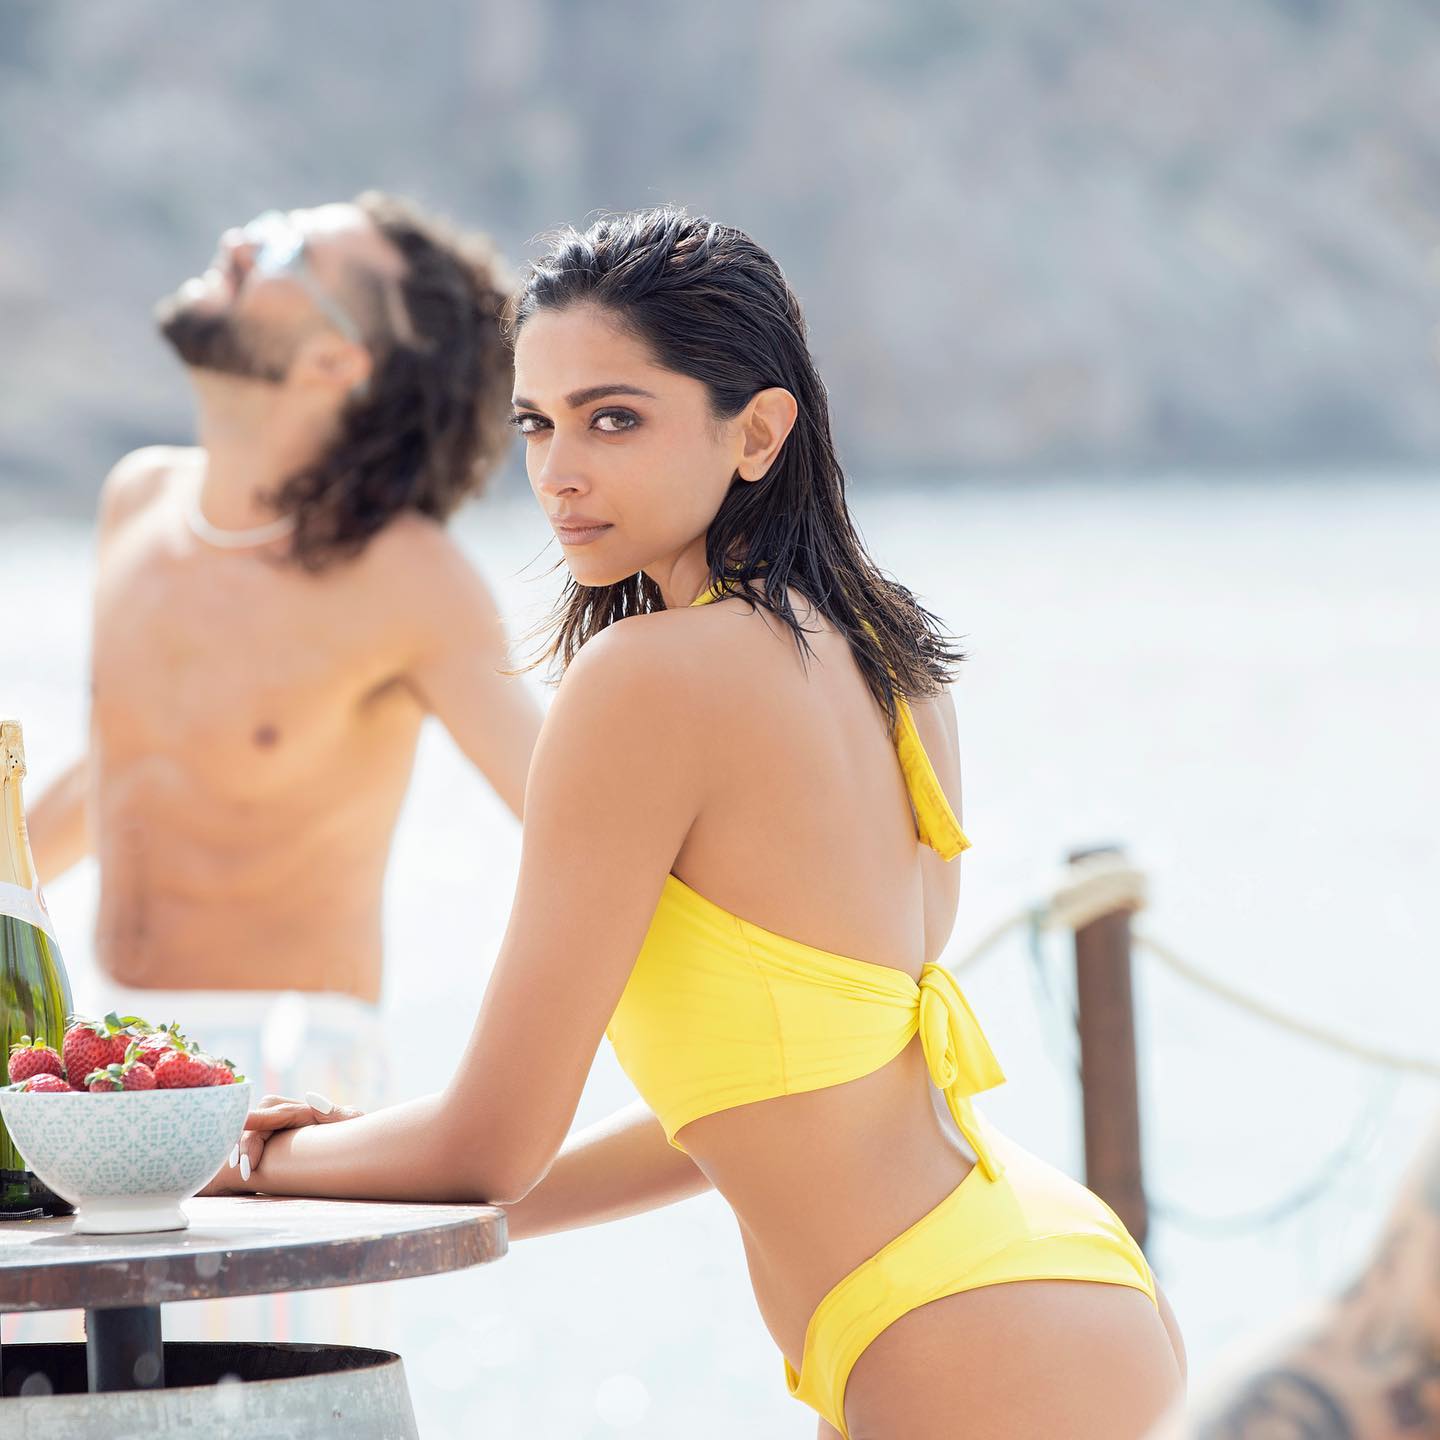 Deepika Padukone looks uber hot in the yelloe bikini.